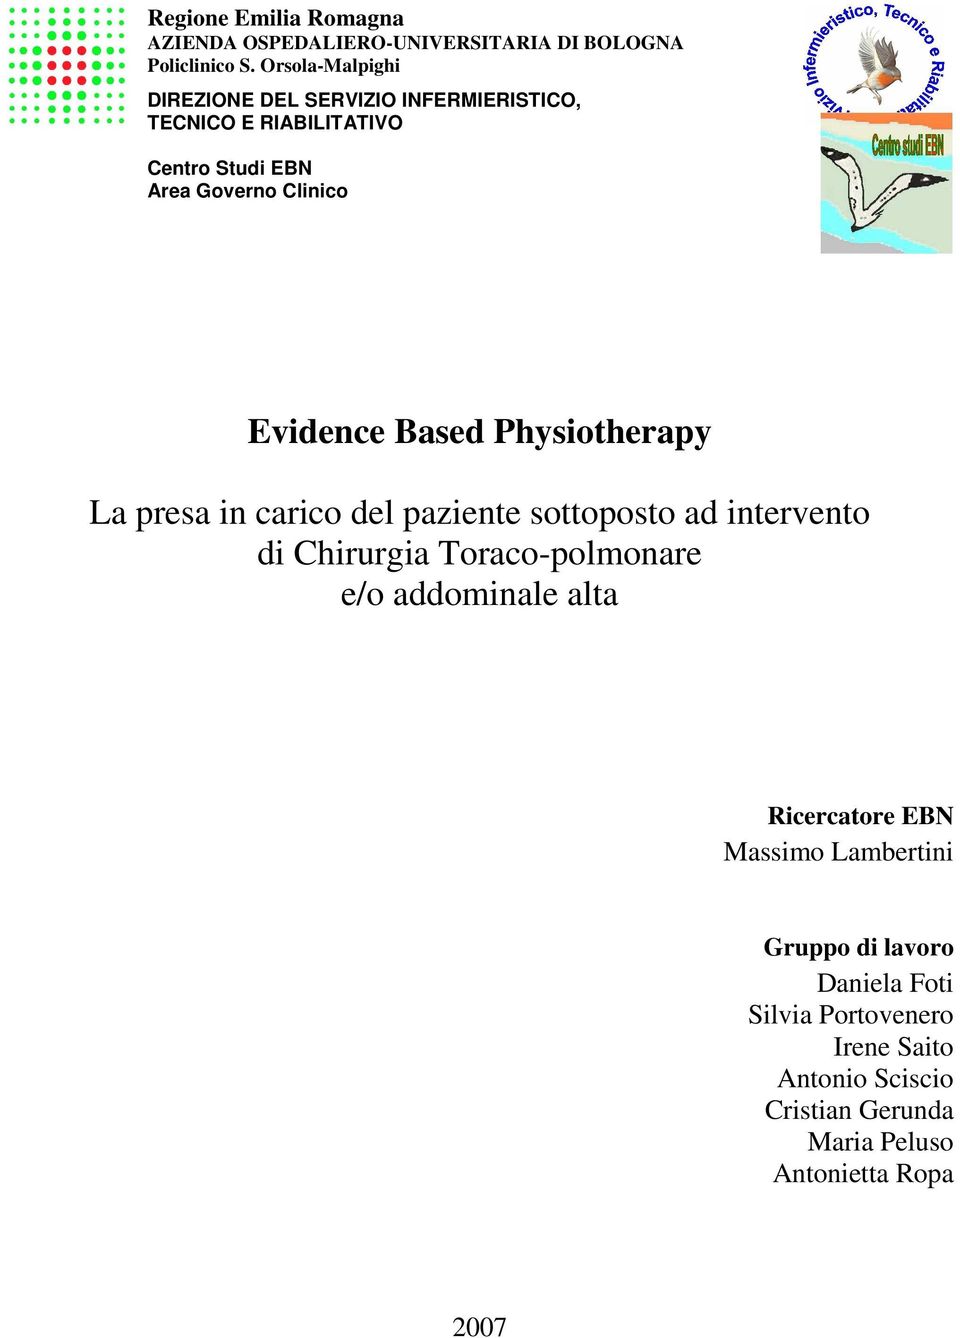 Evidence Based Physiotherapy La presa in carico del paziente sottoposto ad intervento di Chirurgia Toraco-polmonare e/o